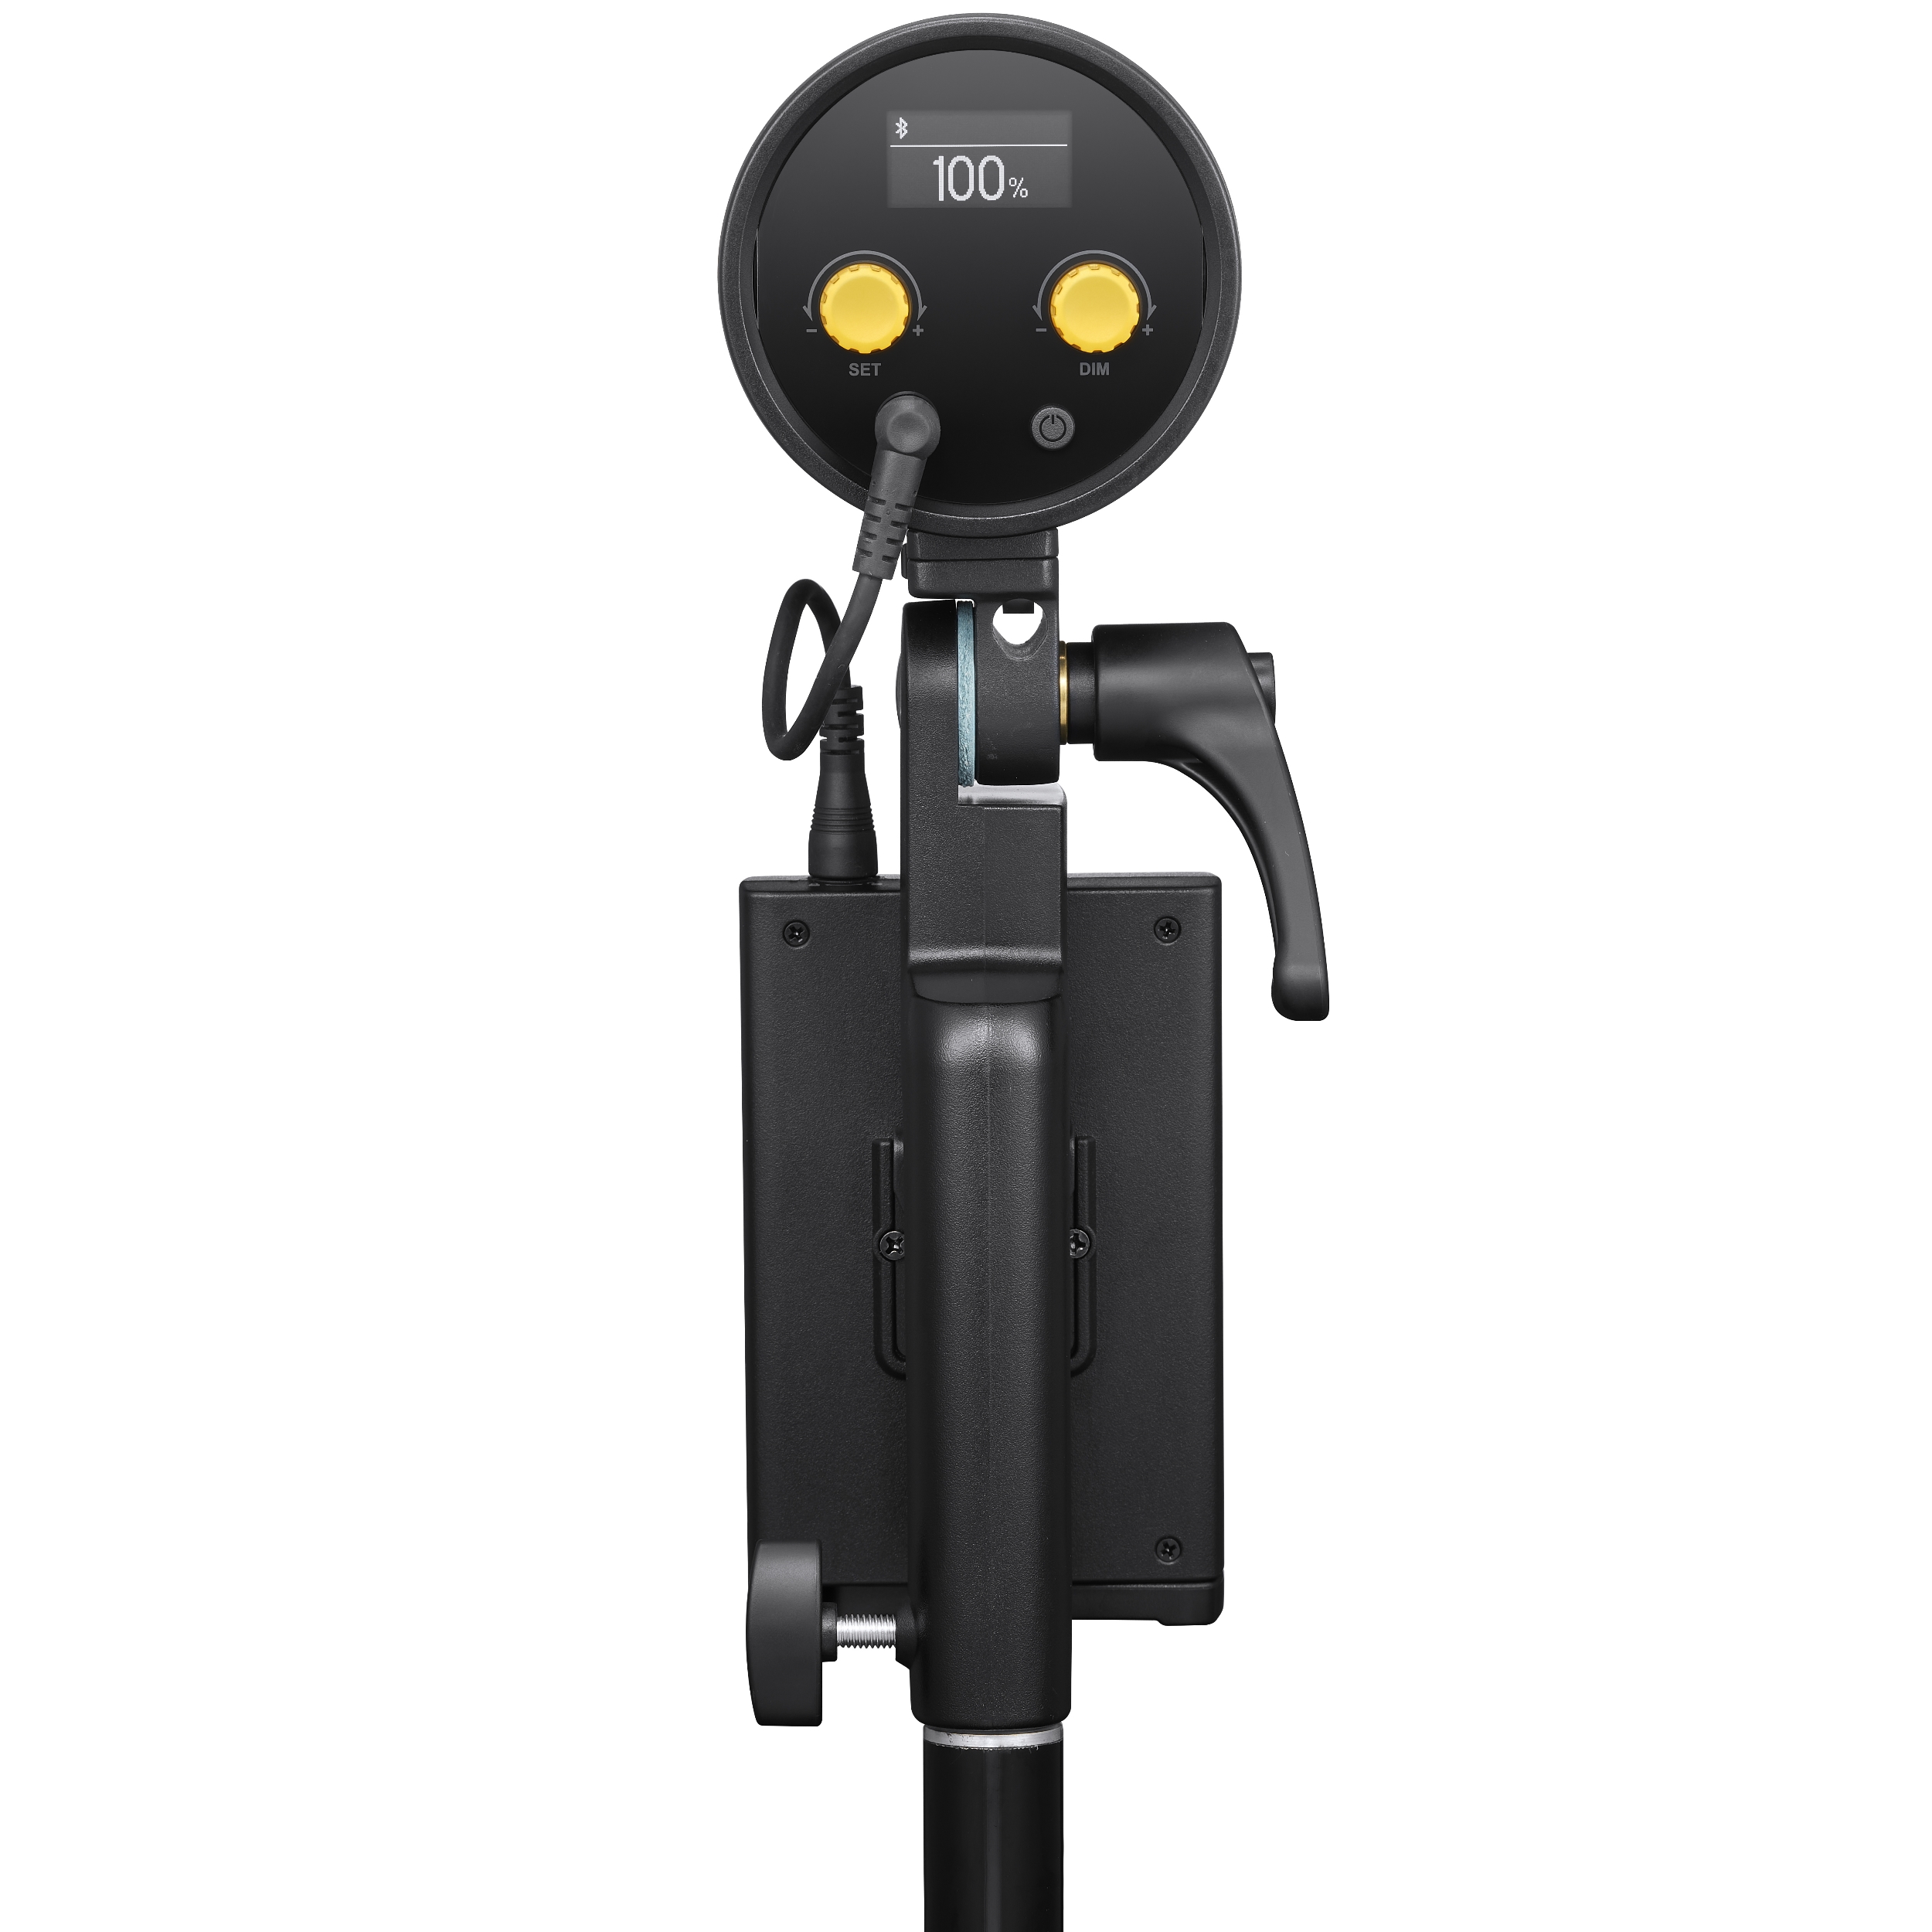 картинка Комплект светодиодных осветителей Godox ML30-K2 Kit для видеосъемки из Постоянный свет от магазина Mif-Bond